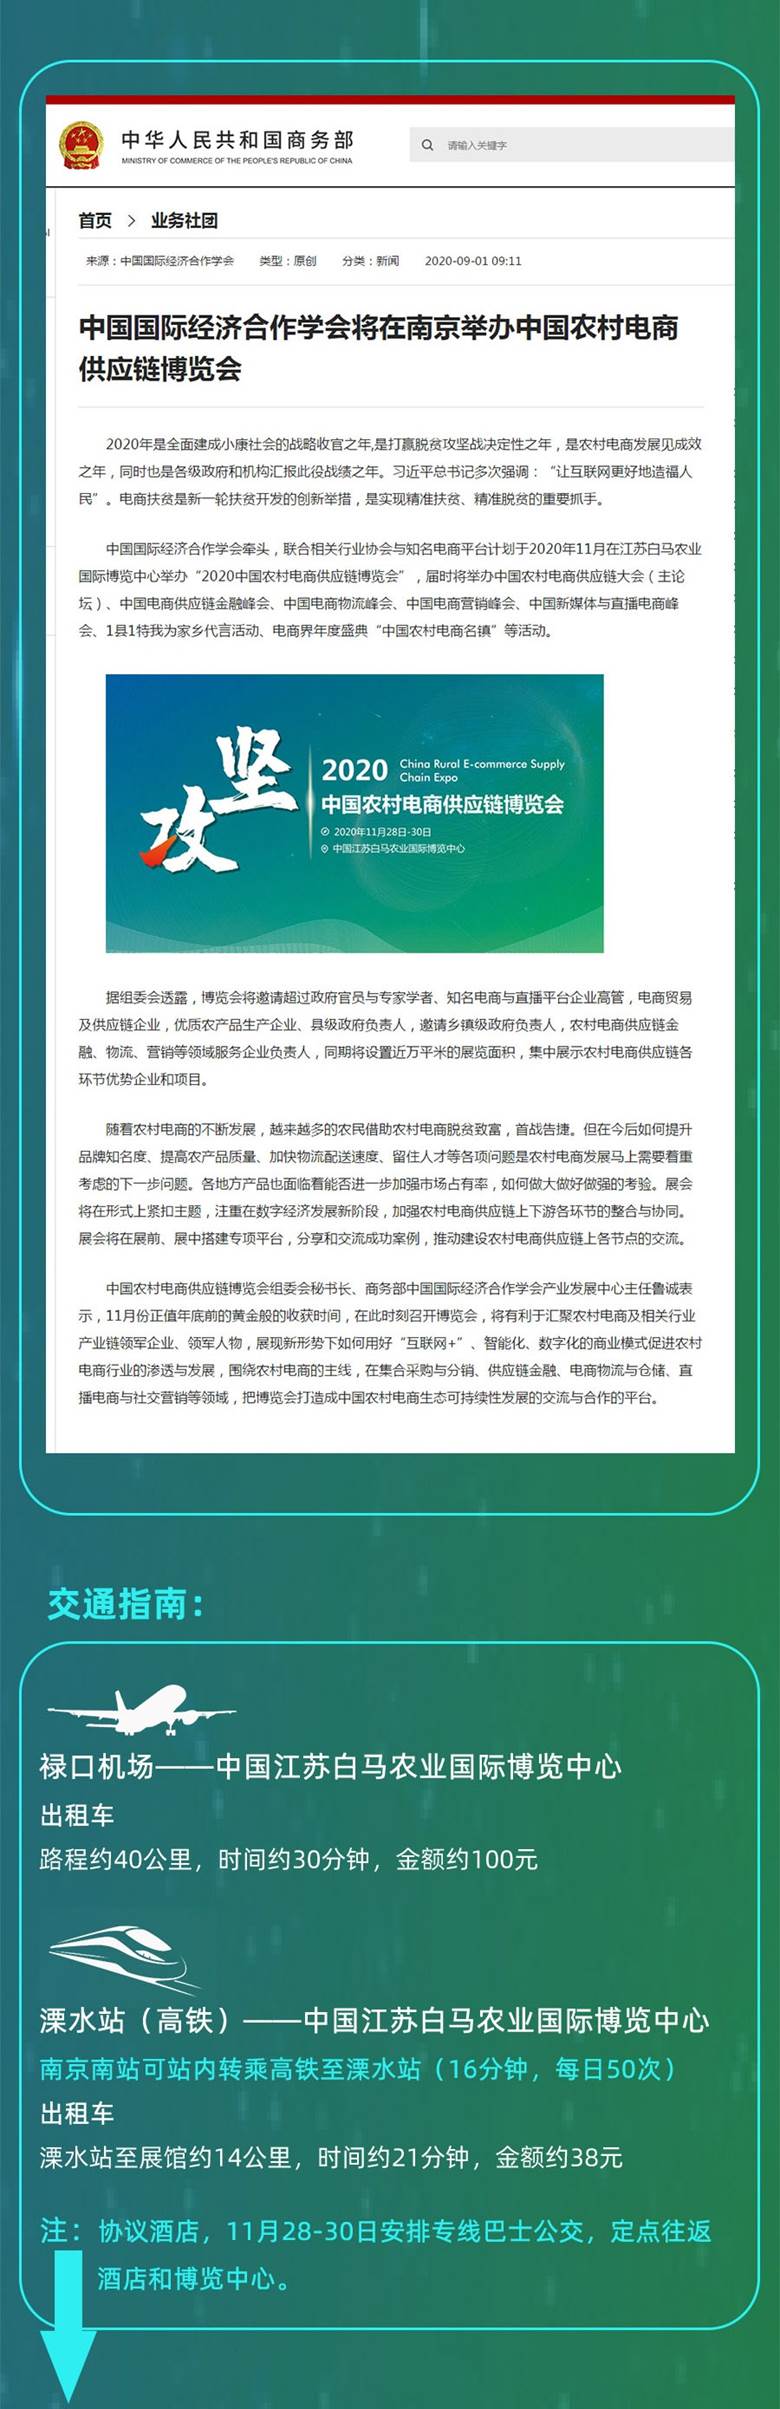 2020中国农村电商供应链博览会5.jpg